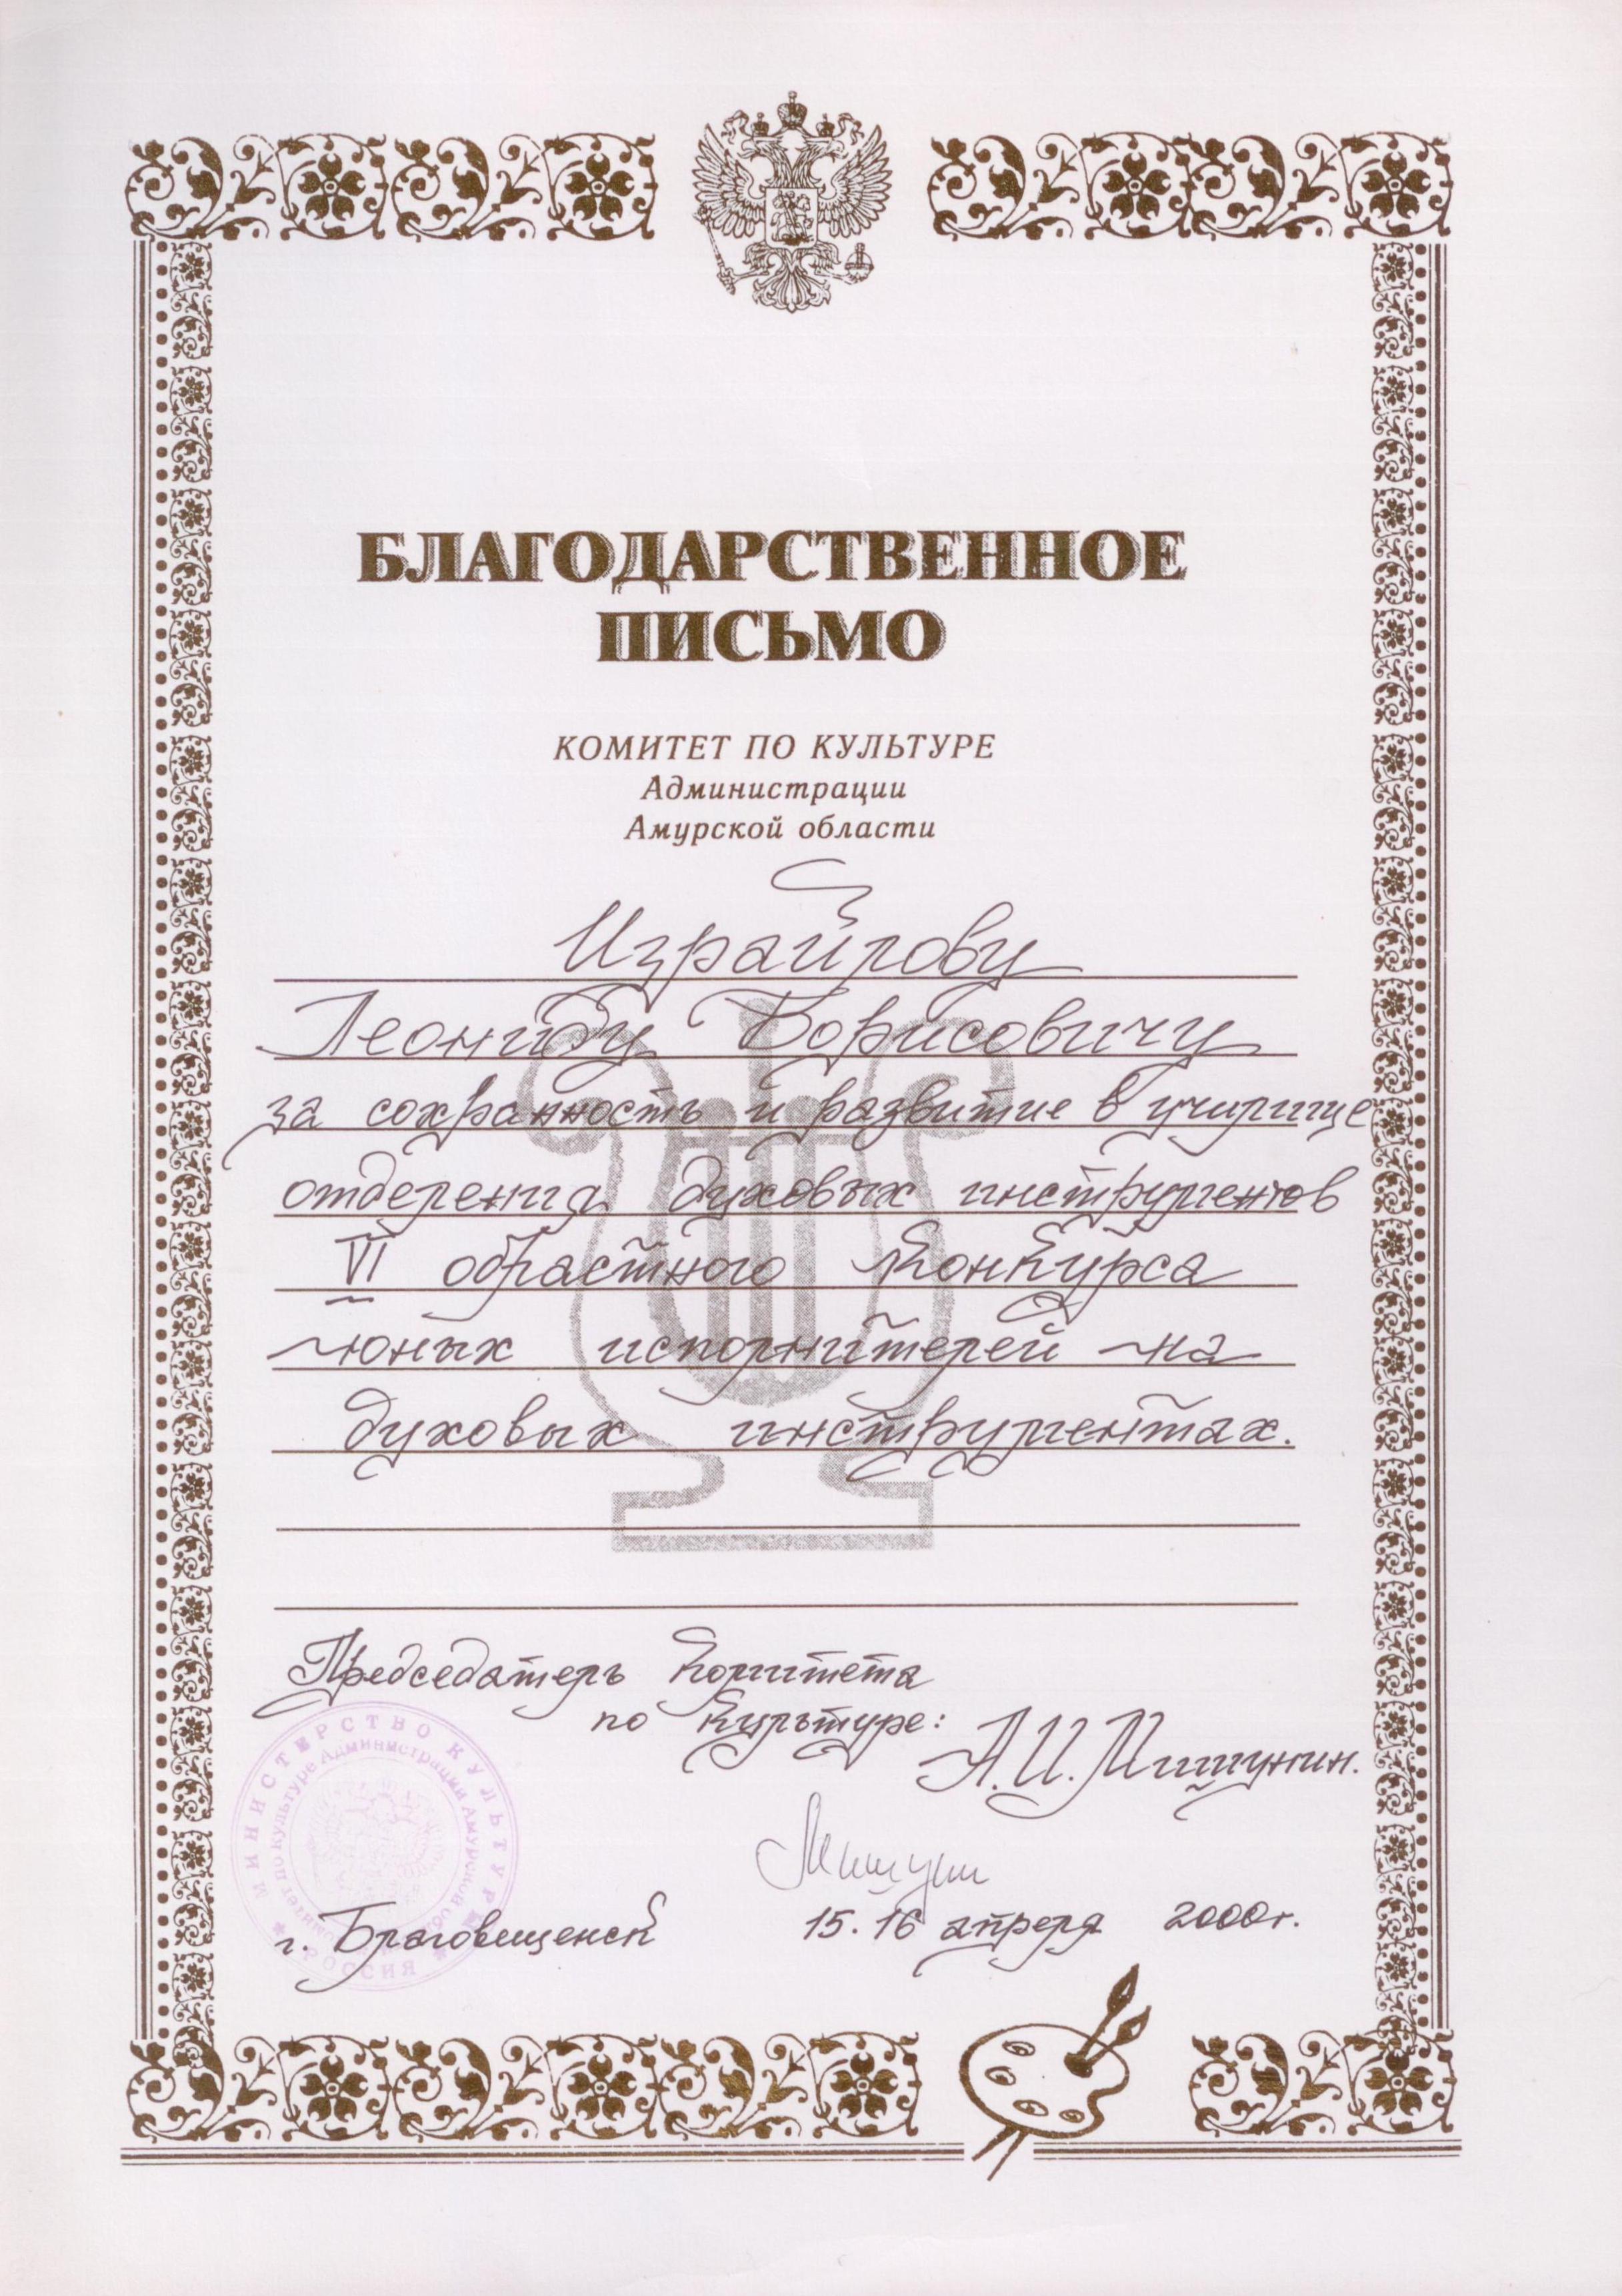 Благодарственное письмо Израйлову Леониду Борисовичу